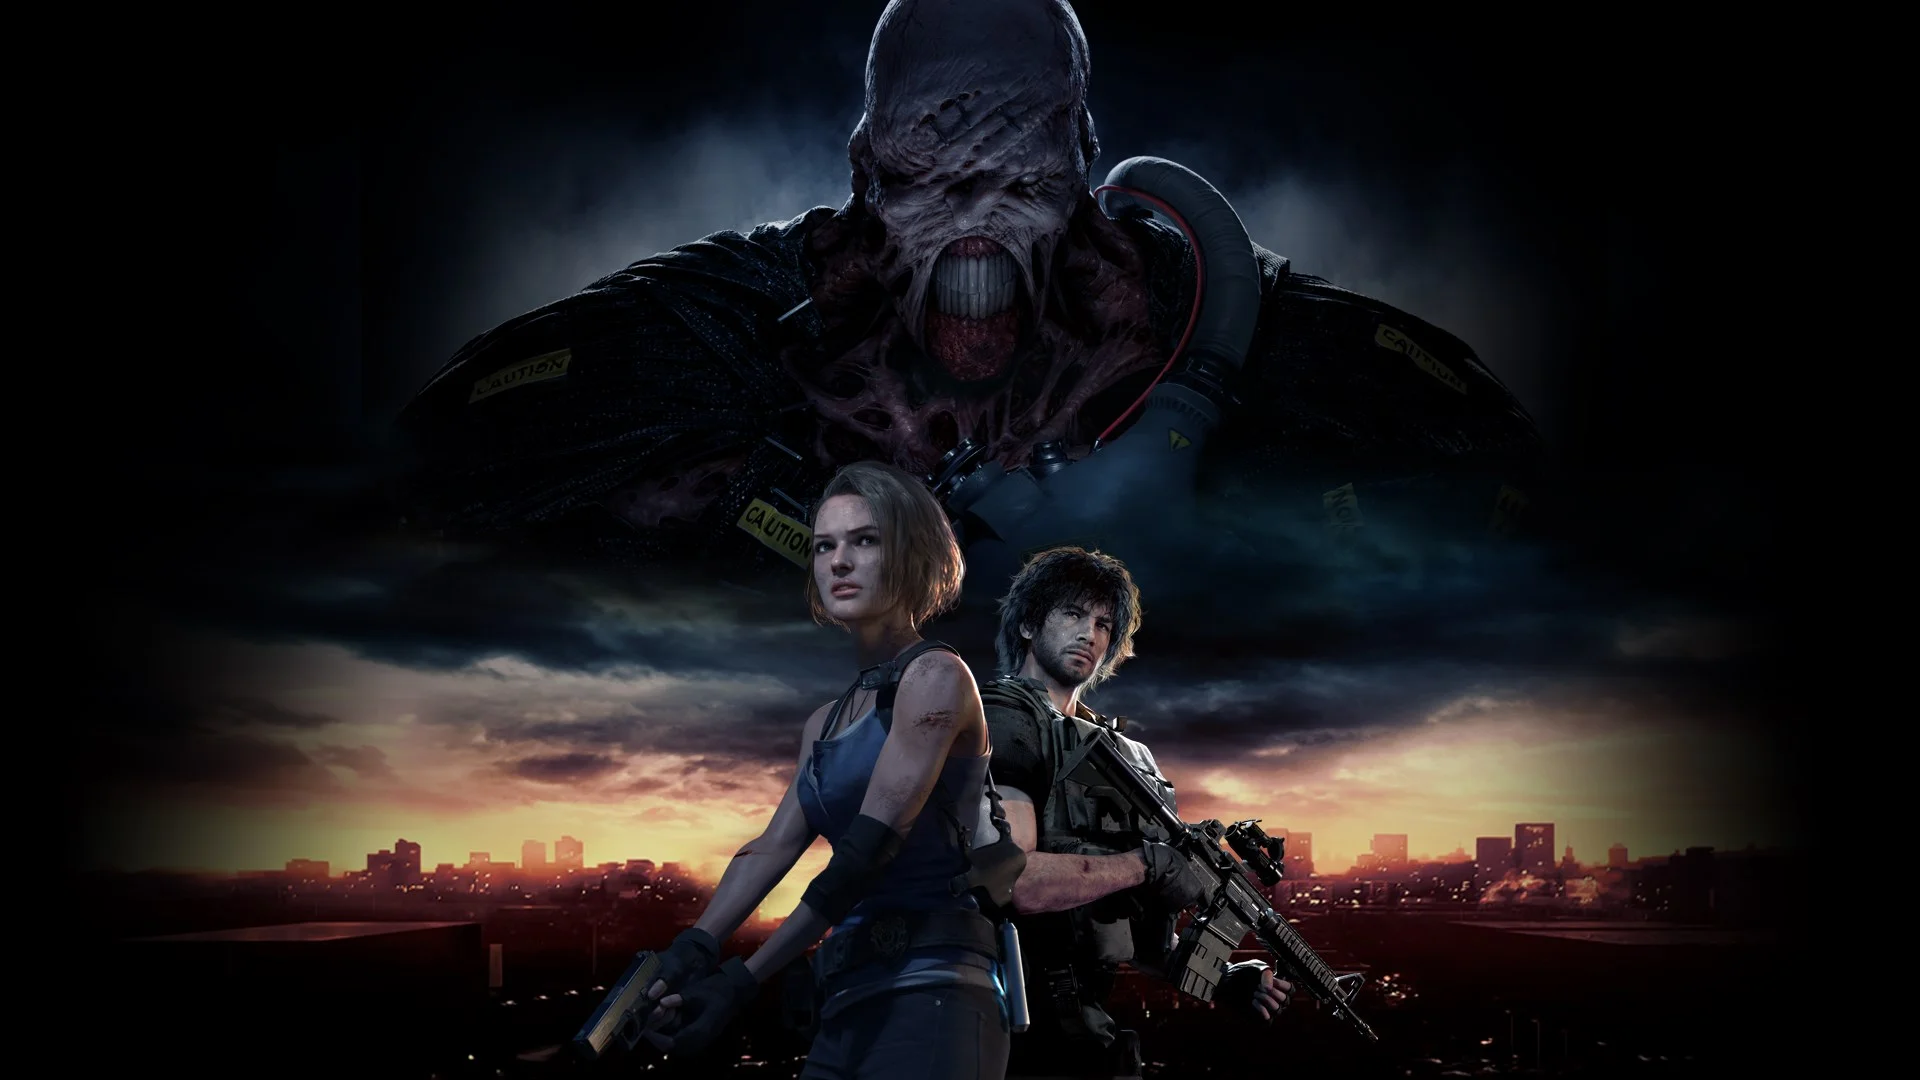 Оригинальную Resident Evil 3 создавали под рабочим названием Biohazard 1.9 — в первую очередь потому, что история Джилл Валентайн начинается незадолго до событий Resident Evil 2 в том же Раккун-сити. Наверняка была и другая причина: тогда, в 1999-м, мало кто не заметил, что третья часть ушла от изначальной концепции RE — и жанра survival horror — даже сильнее, чем RE2. Сместила акцент с исследования уровней и решения загадок на стрельбу. Использовала ассеты и механики второй части. Иначе говоря, «дополнила» ее идеи, но ничего нового в серию не привнесла. Это был скорее шаг в сторону, чем уверенное движение вперед.